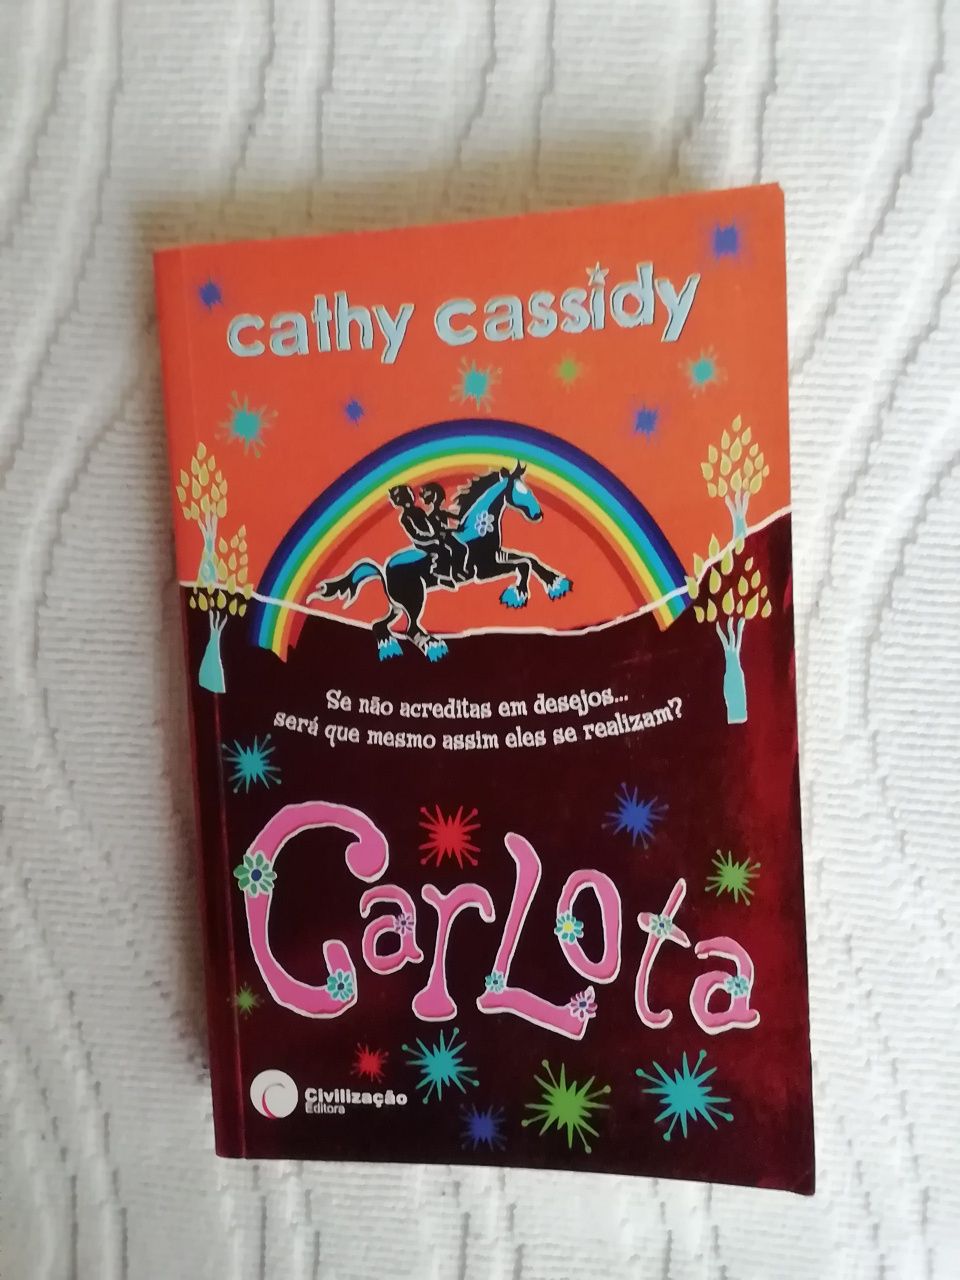 Carlota de Cathy Cassidy